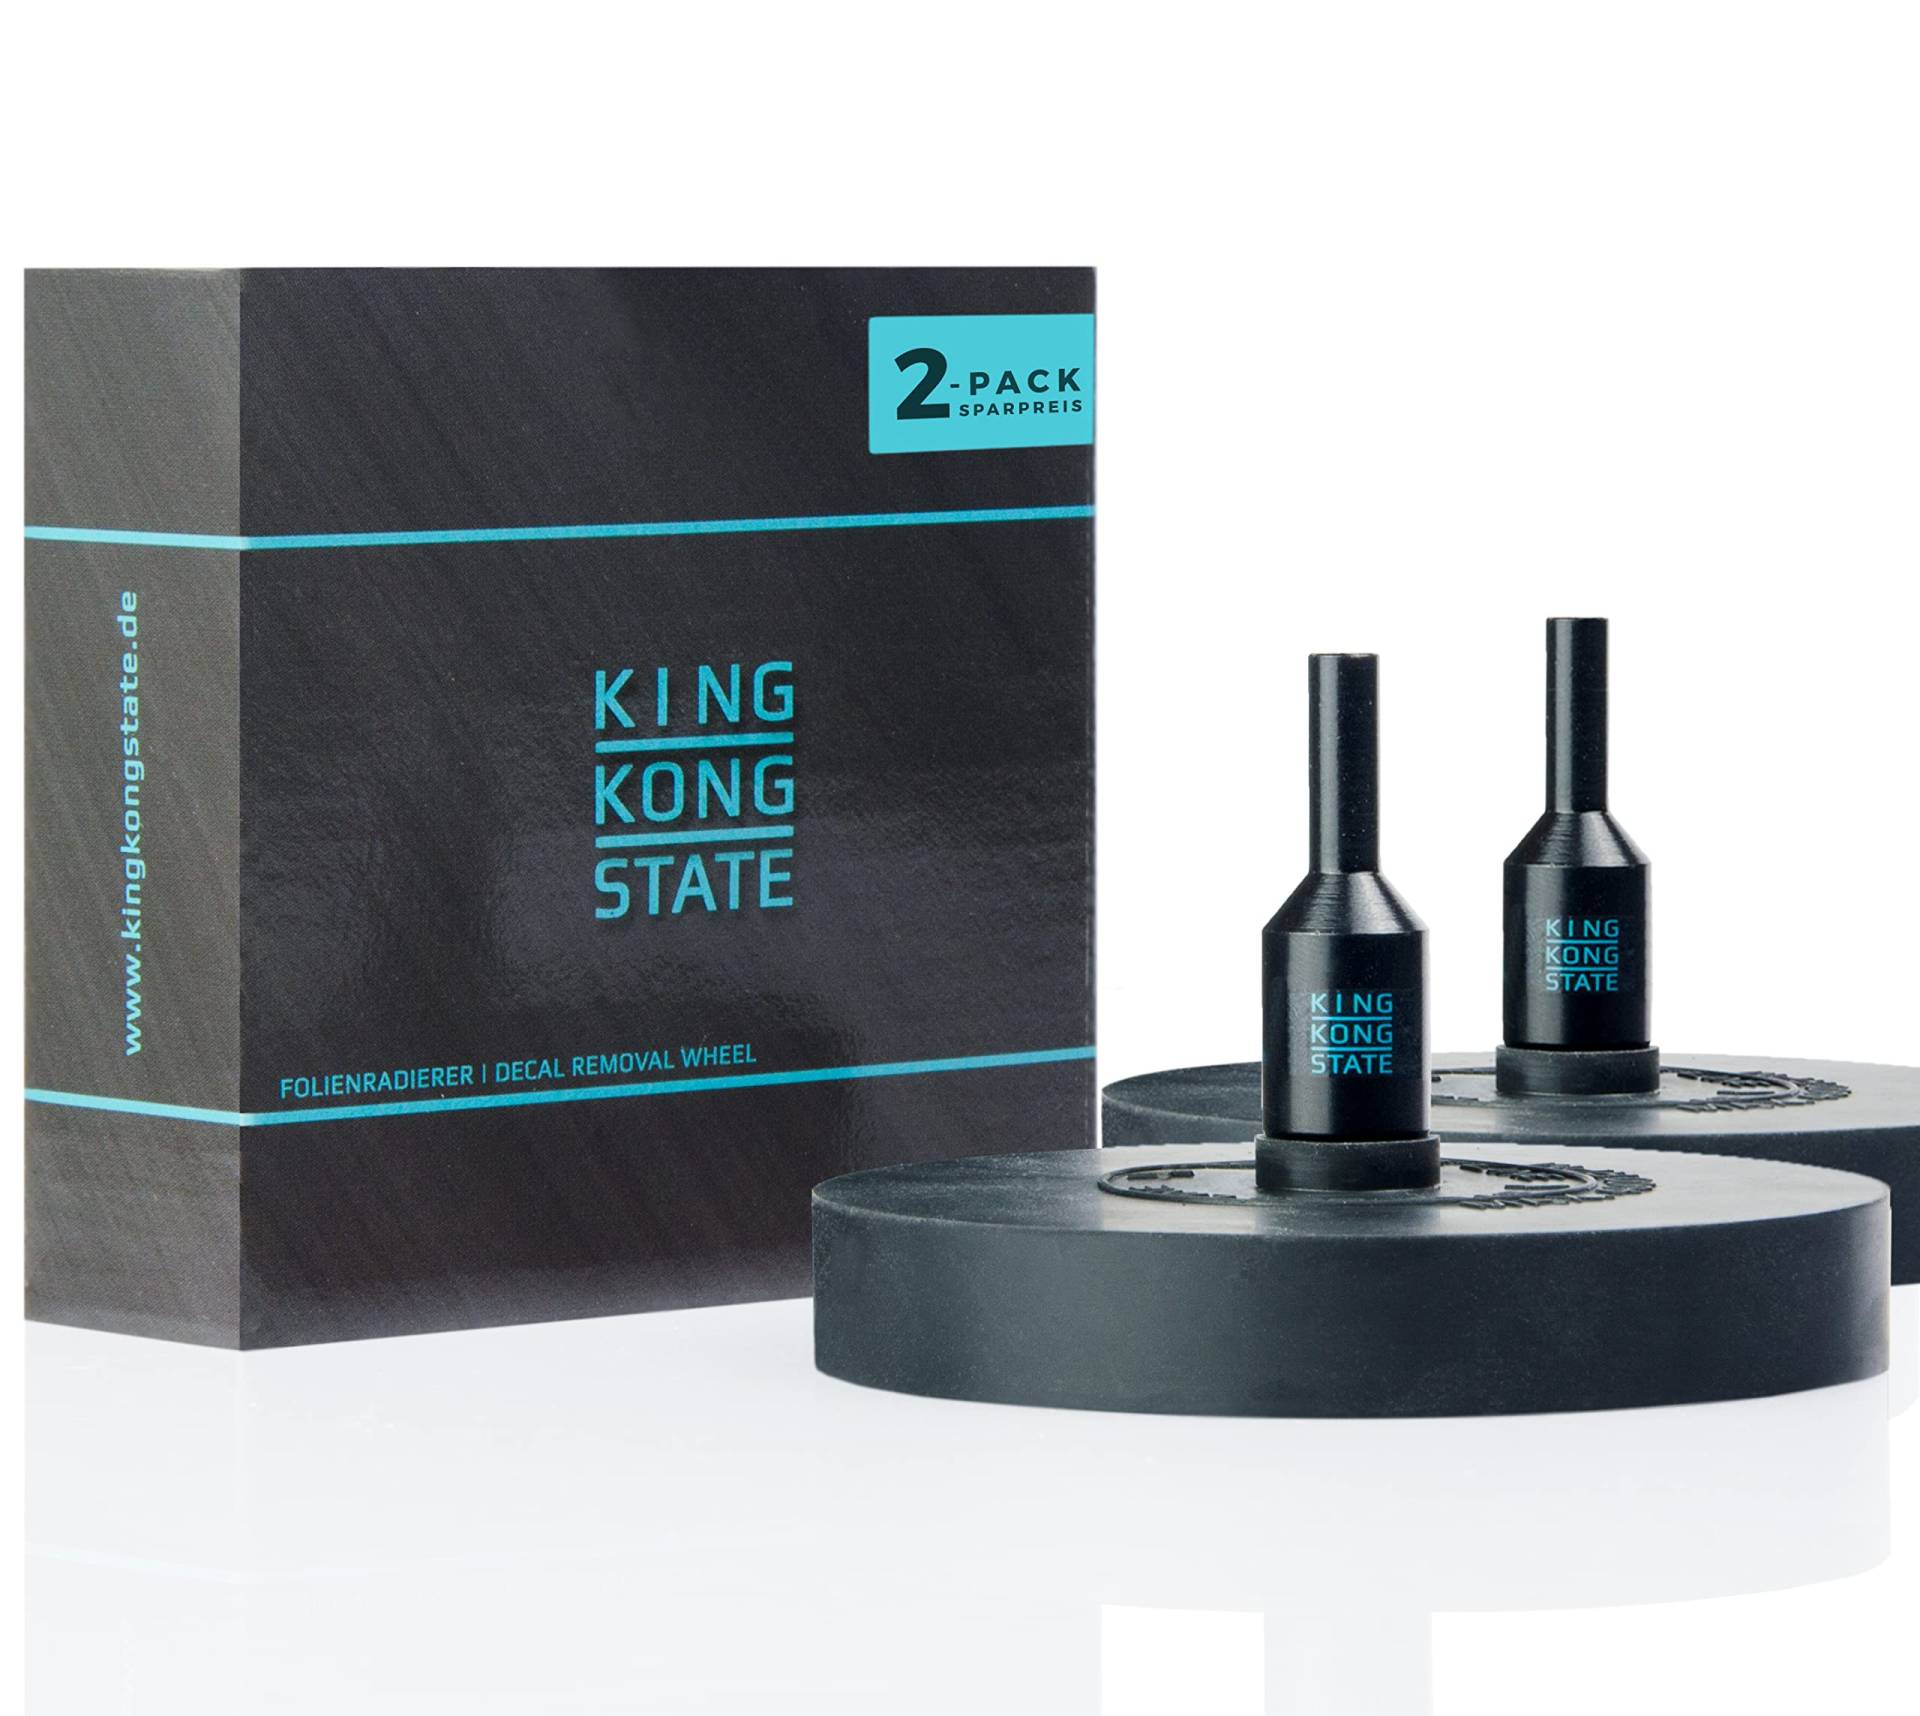 King Kong State Folienradierer 2-Pack zur Entfernung von Folien und Aufklebern auf Autos und Motorrädern - schwarzer Radierer für Akku-Bohrmaschinen von King Kong State